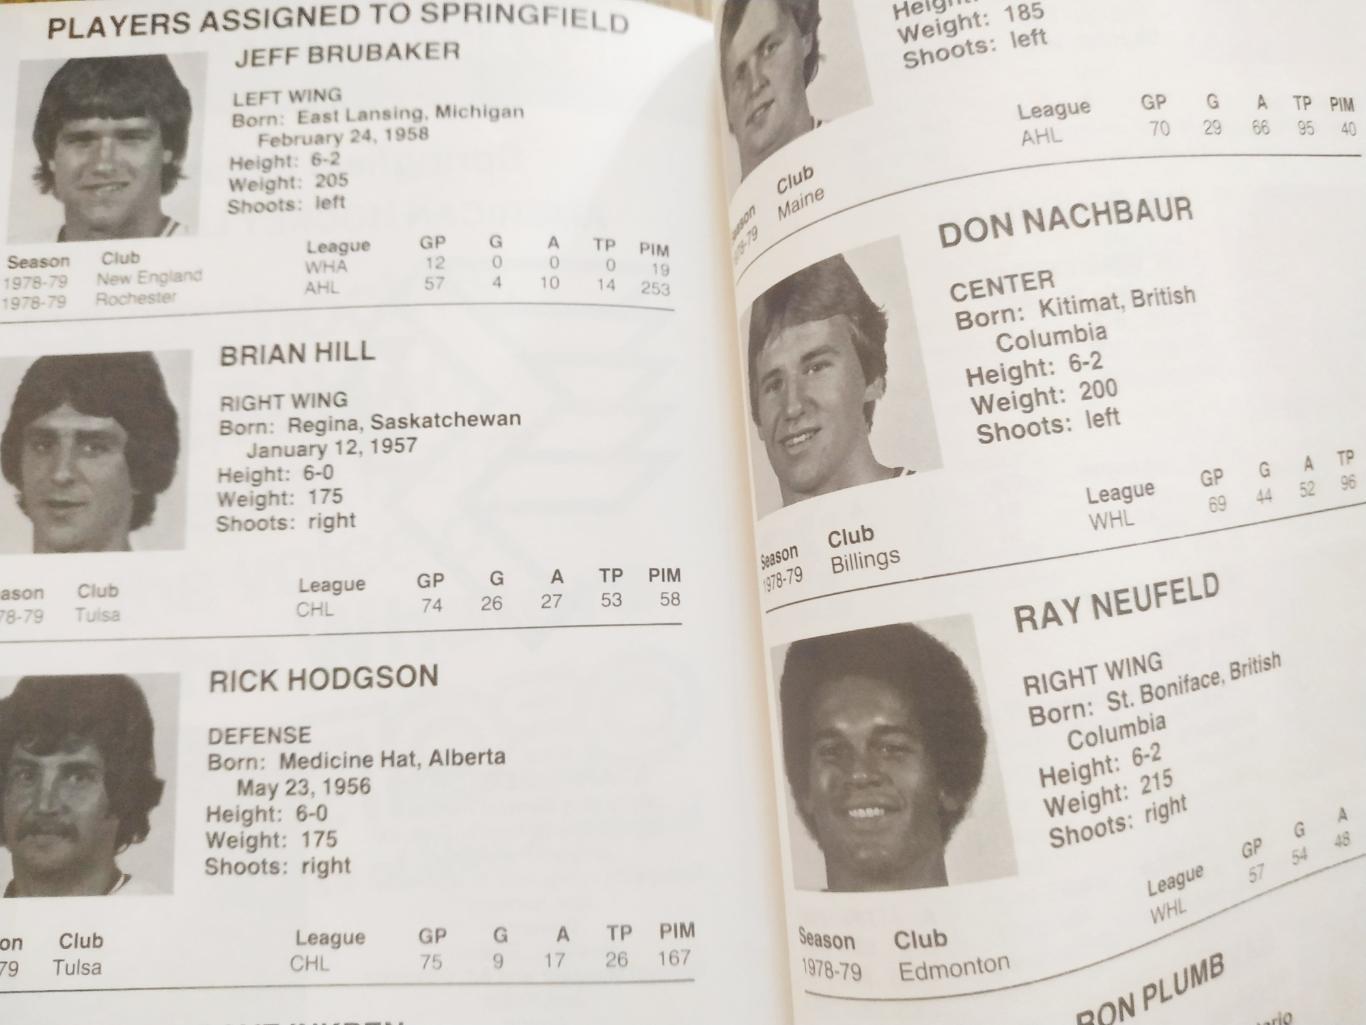 ХОККЕЙ СПРАВОЧНИК ЕЖЕГОДНИК НХЛ 1979-80 NHL HARTFORD WHALERS YEARBOOK GUIDE 5